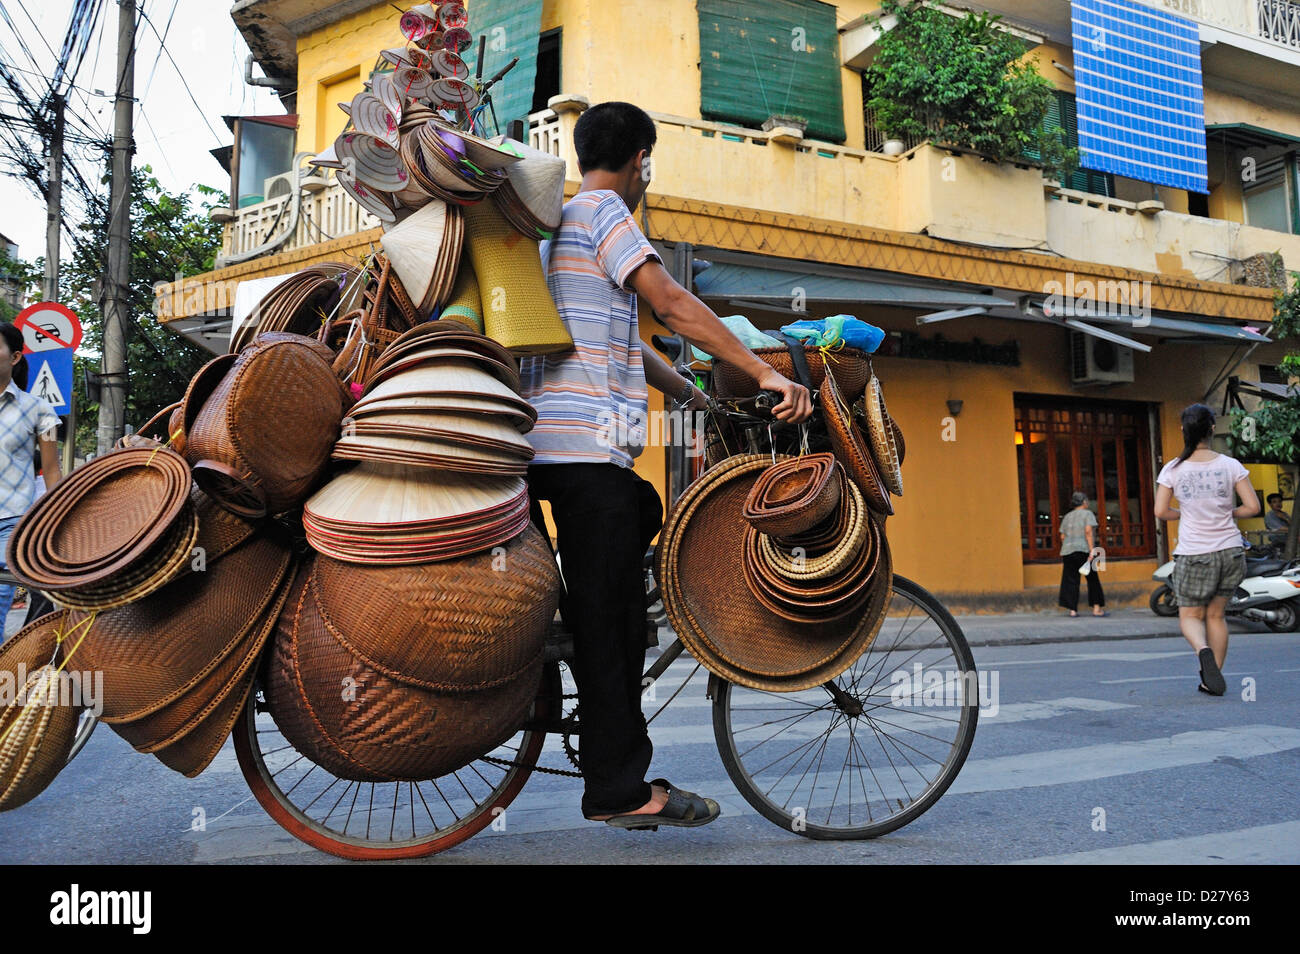 L'homme sur un vélo de paille vente bols et chapeaux, Hanoi, Vietnam Banque D'Images